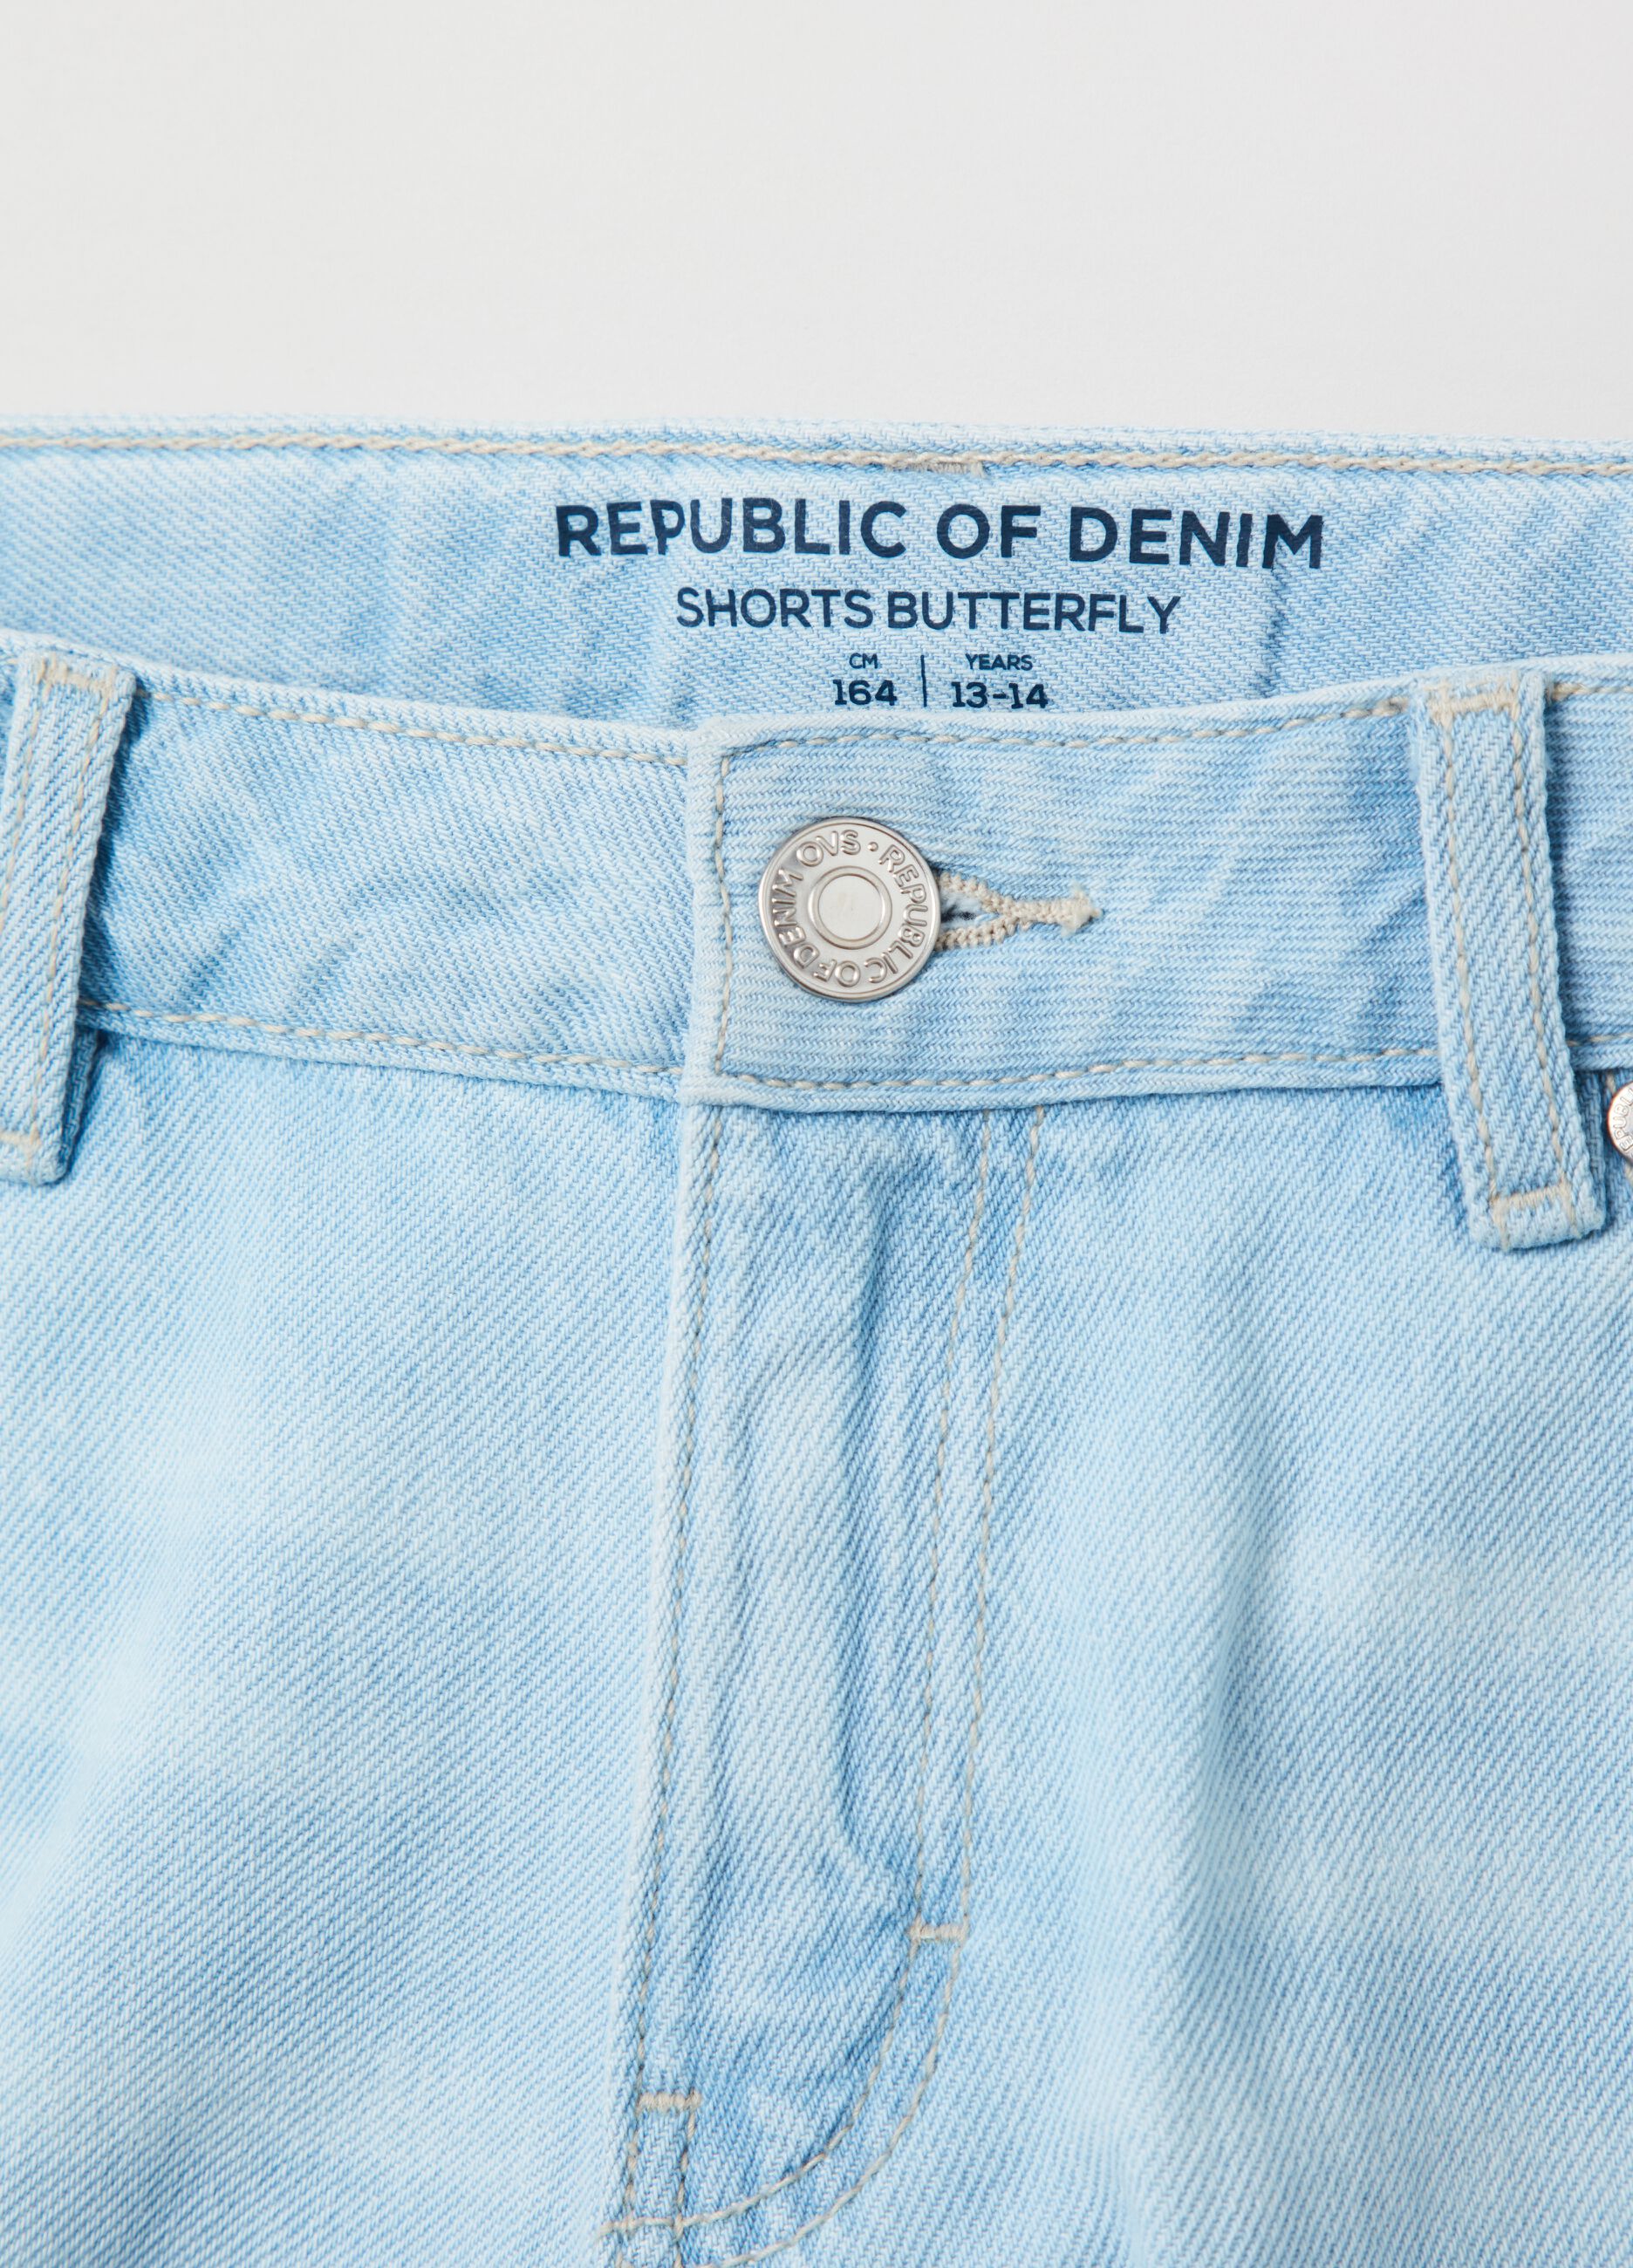 Butterfly shorts in denim